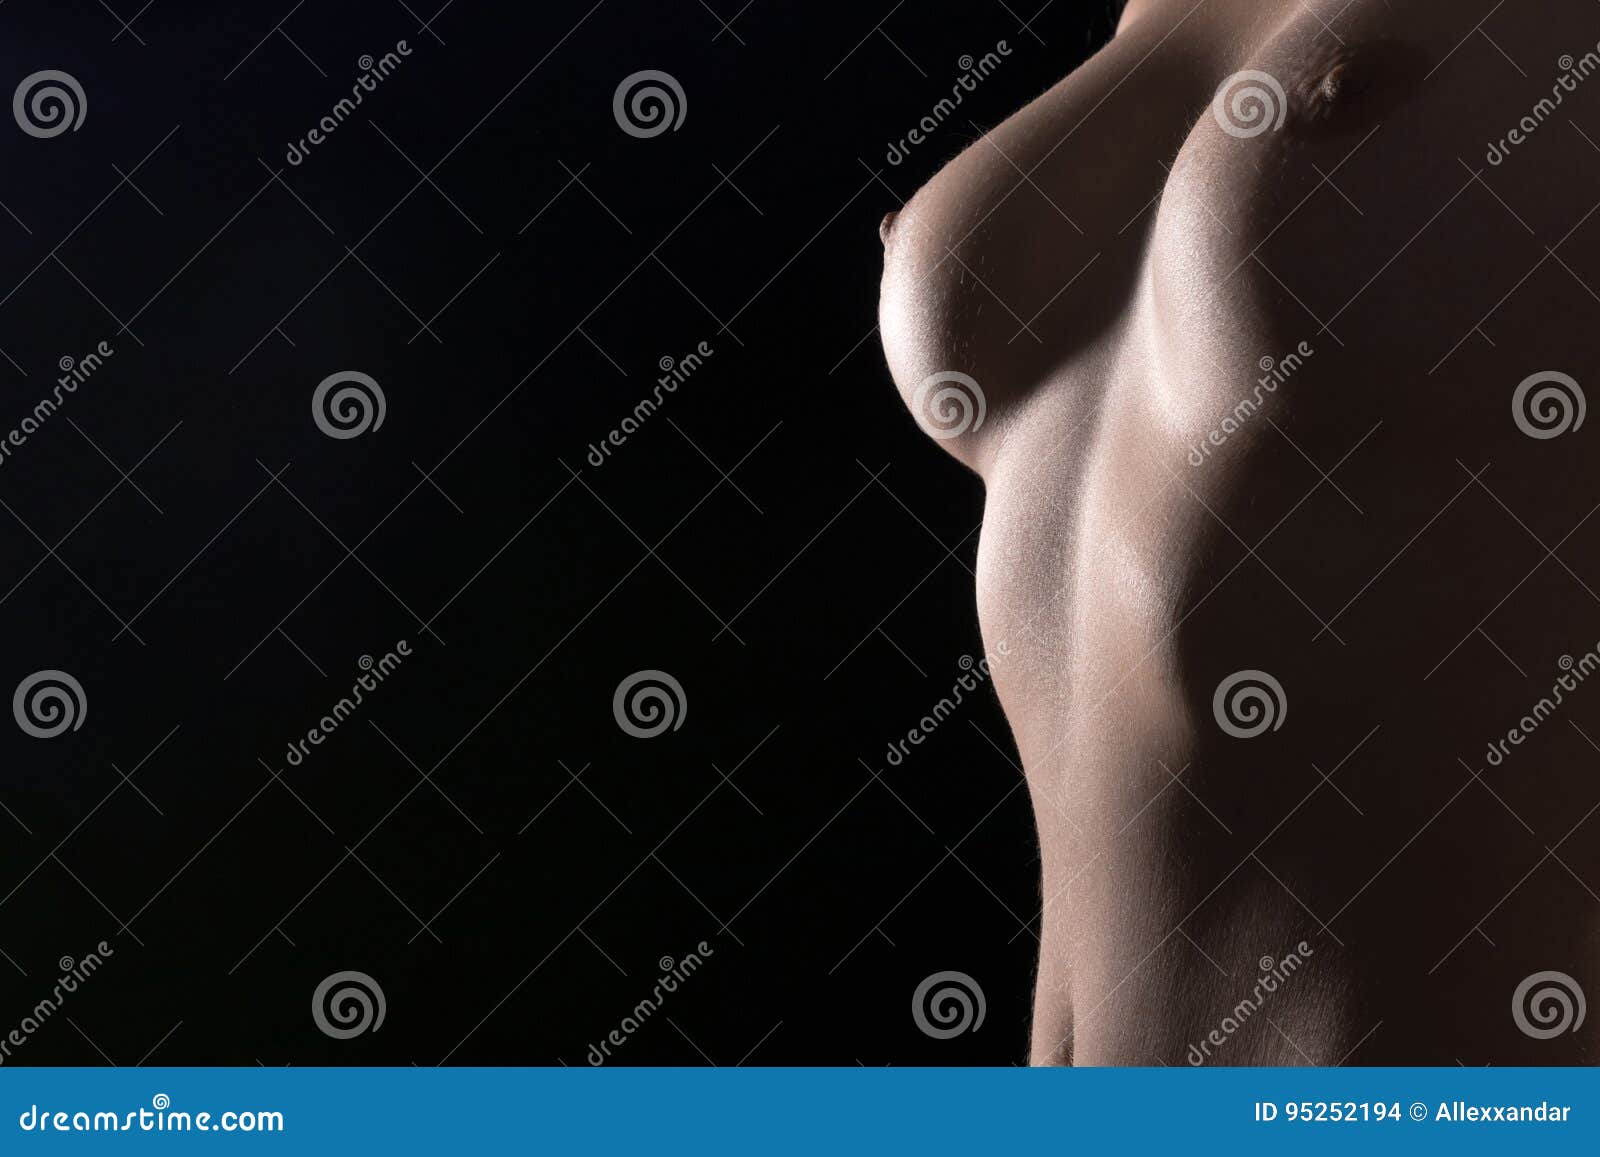 nero femminile nudo foto ebano fighe pics